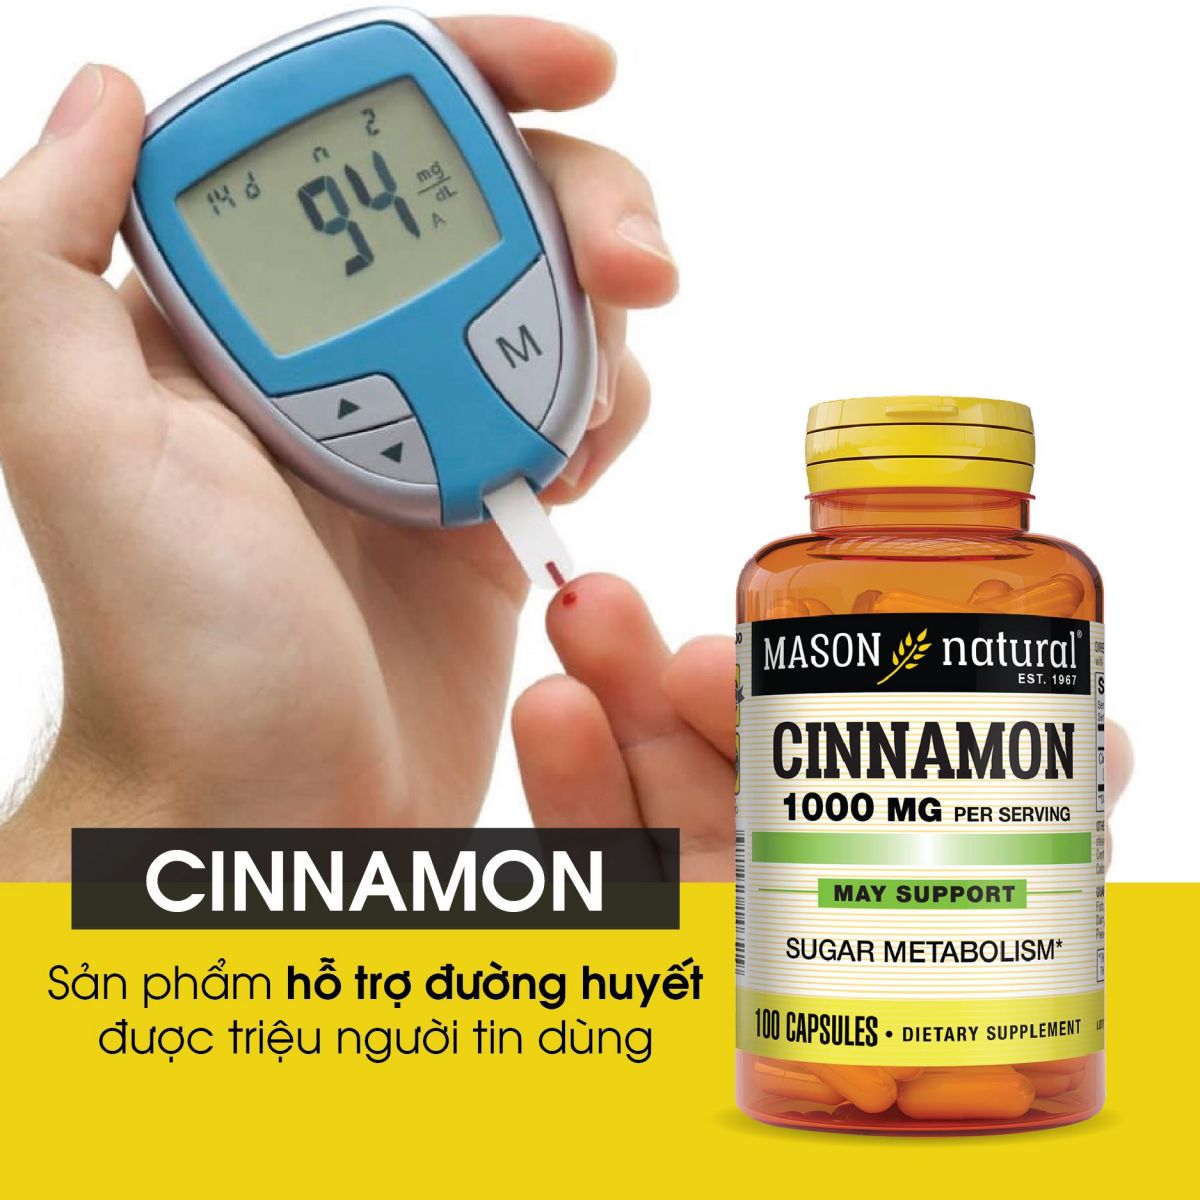 Mason Natural Cinnamon - Hỗ trợ điều trị bệnh tiểu đường